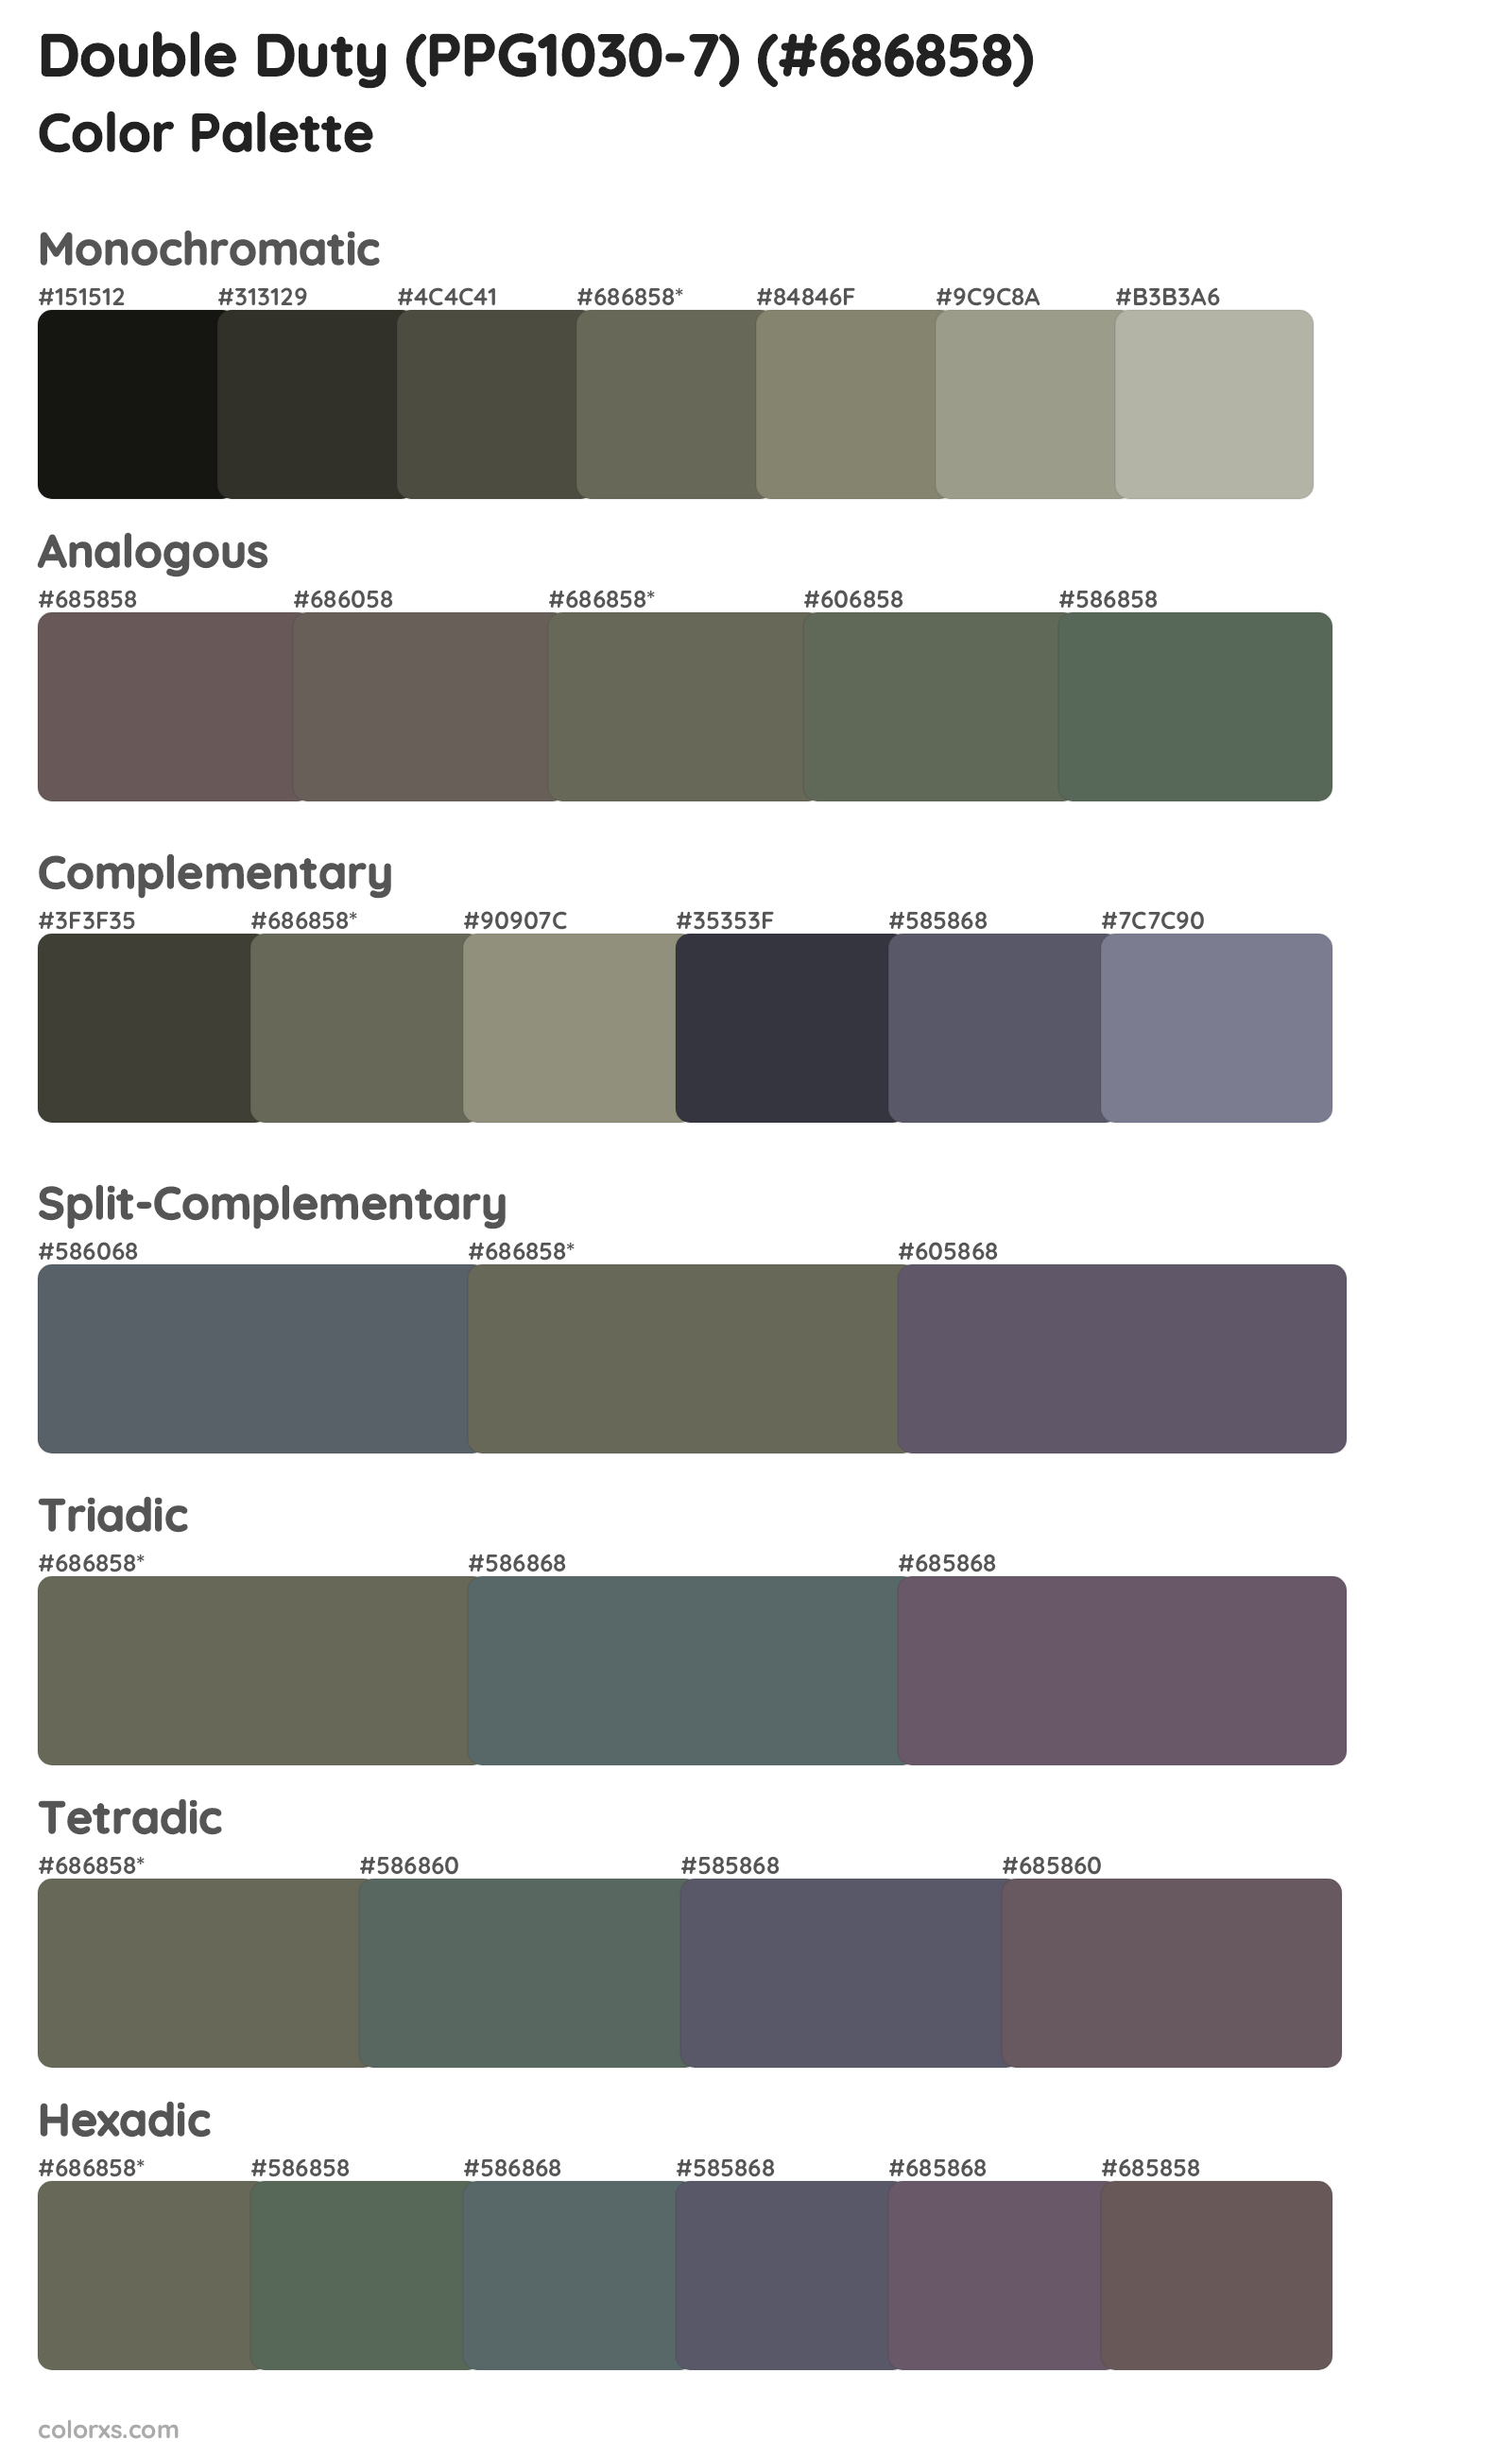 Double Duty (PPG1030-7) Color Scheme Palettes